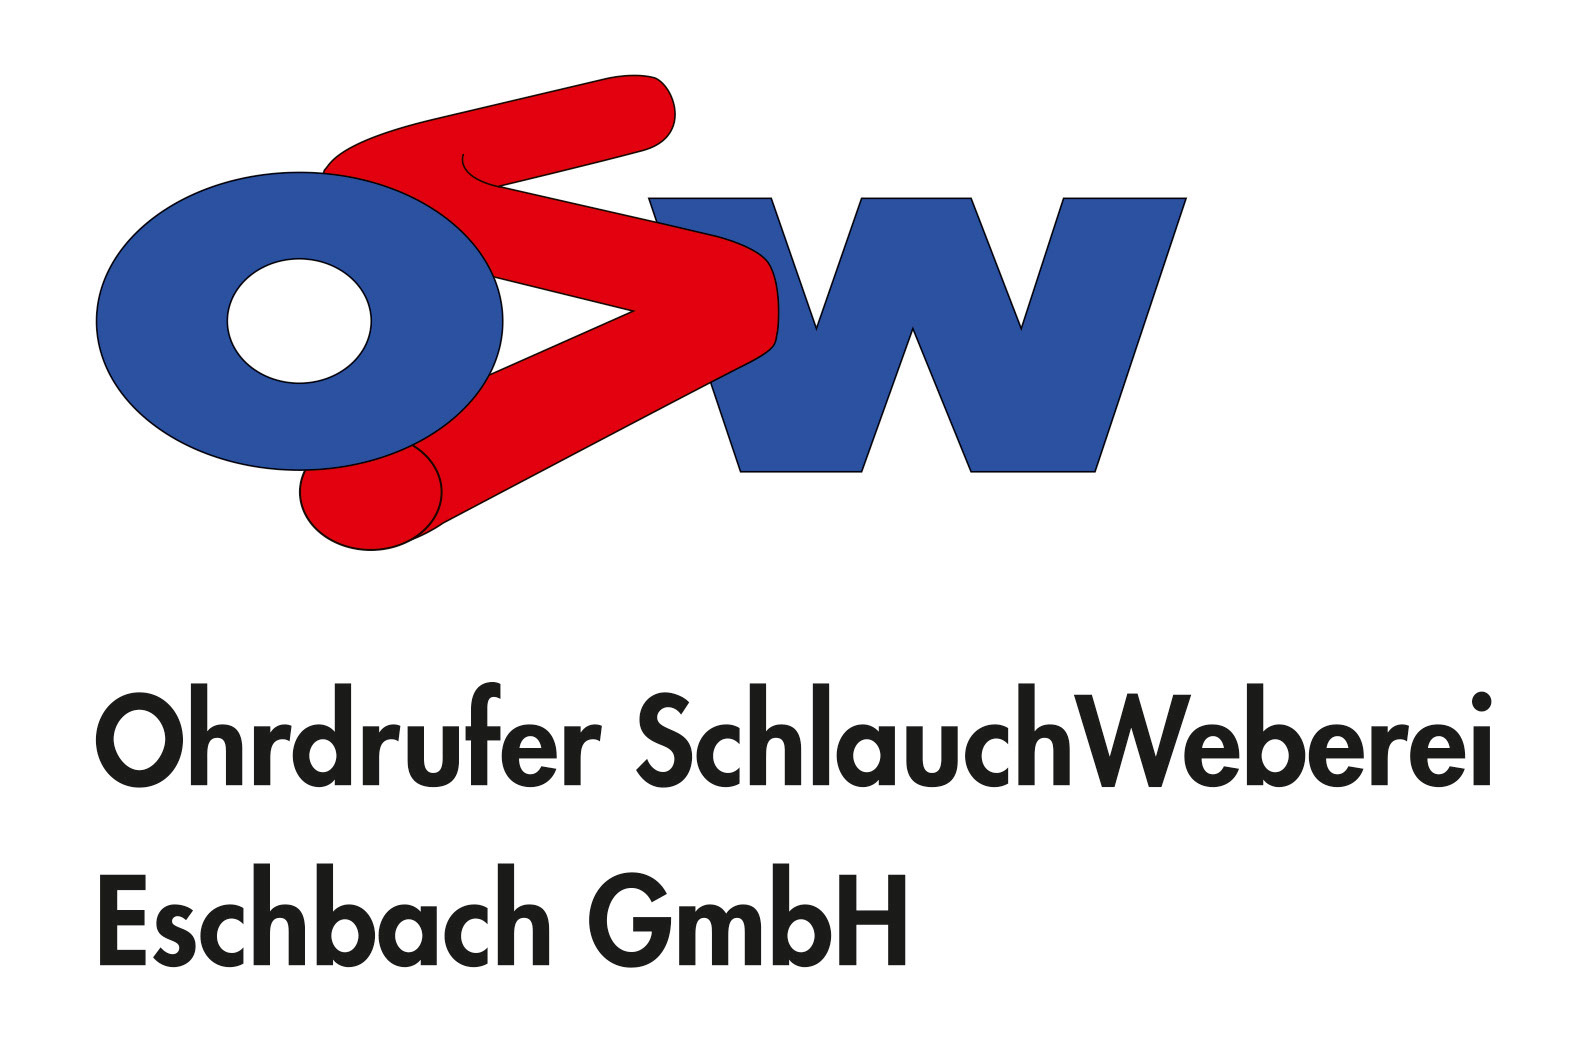 OSW - Ohrdrufer Schlauchweberei Eschbach GmbH